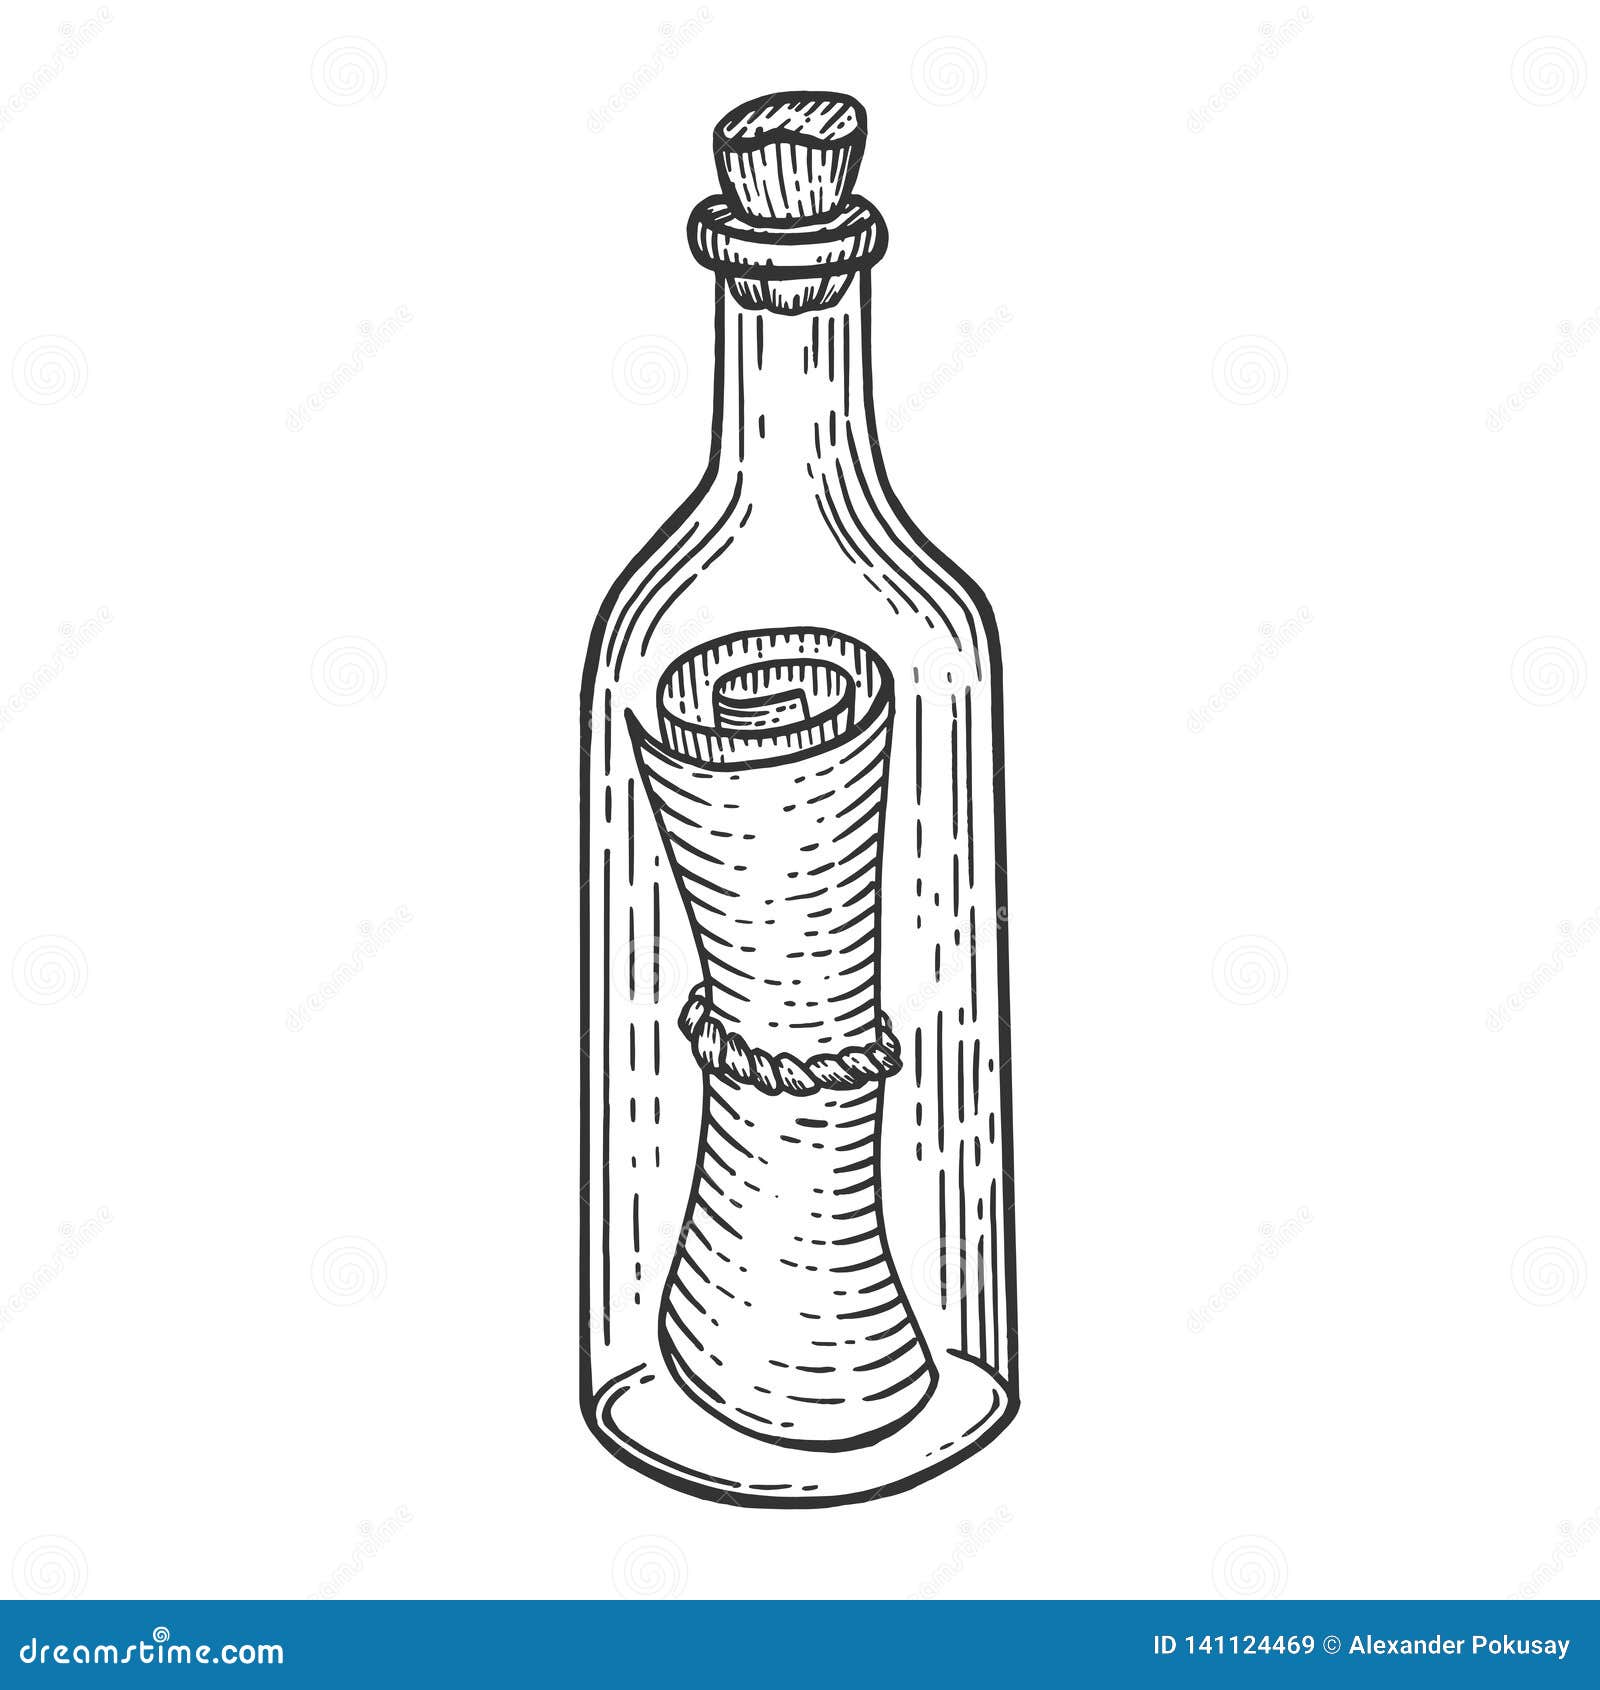 13038 Beer Bottle Sketch Images Stock Photos  Vectors  Shutterstock